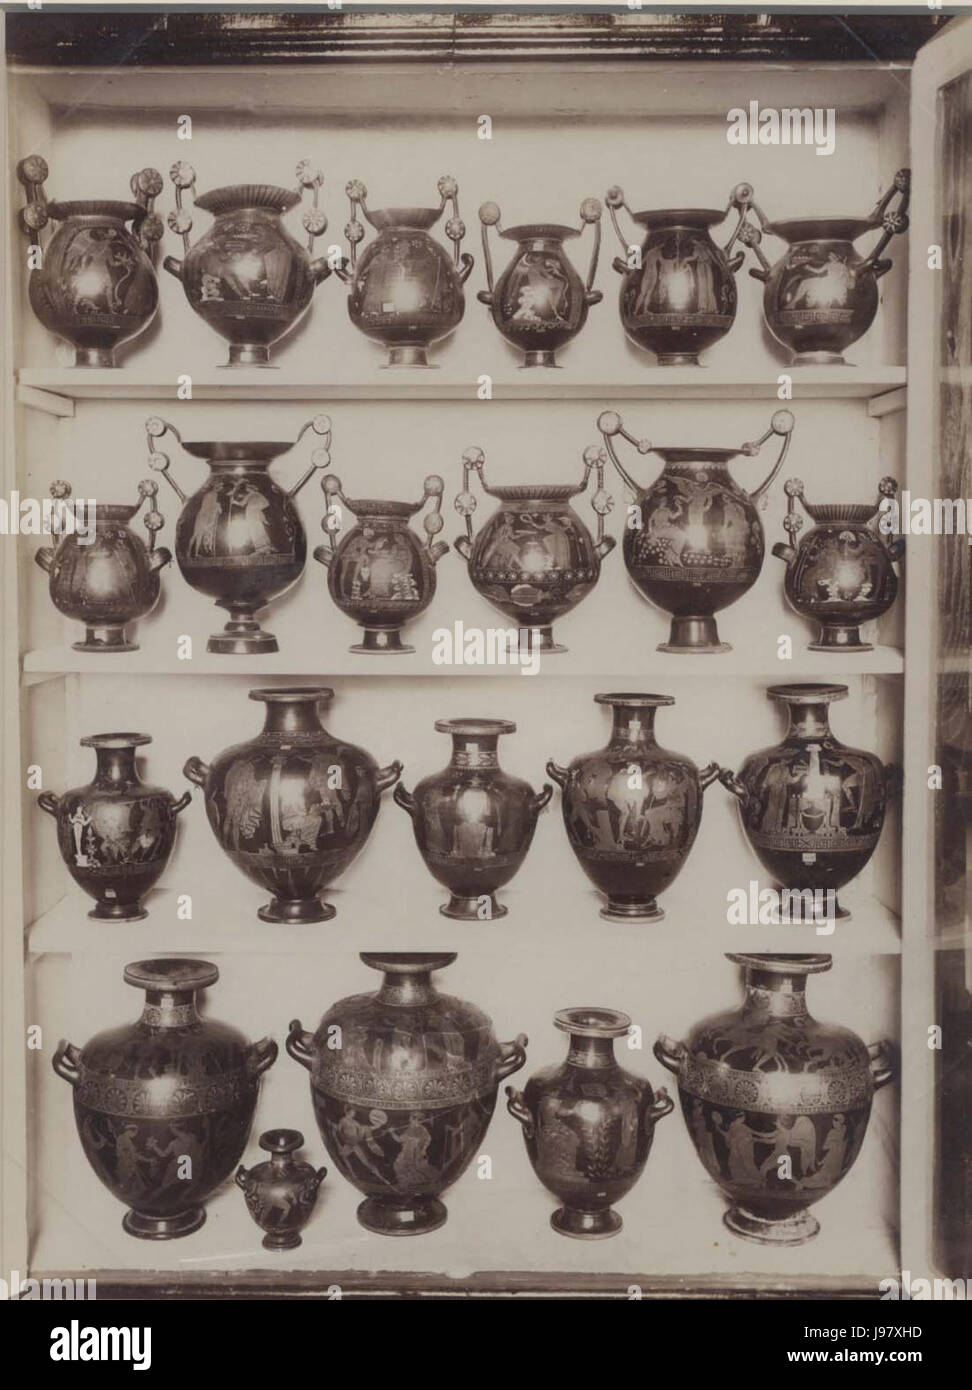 Sommer, Giorgio (1834 1914)   Vasi antichi nel Museo archeologico nazionale di Napoli   04 Stock Photo